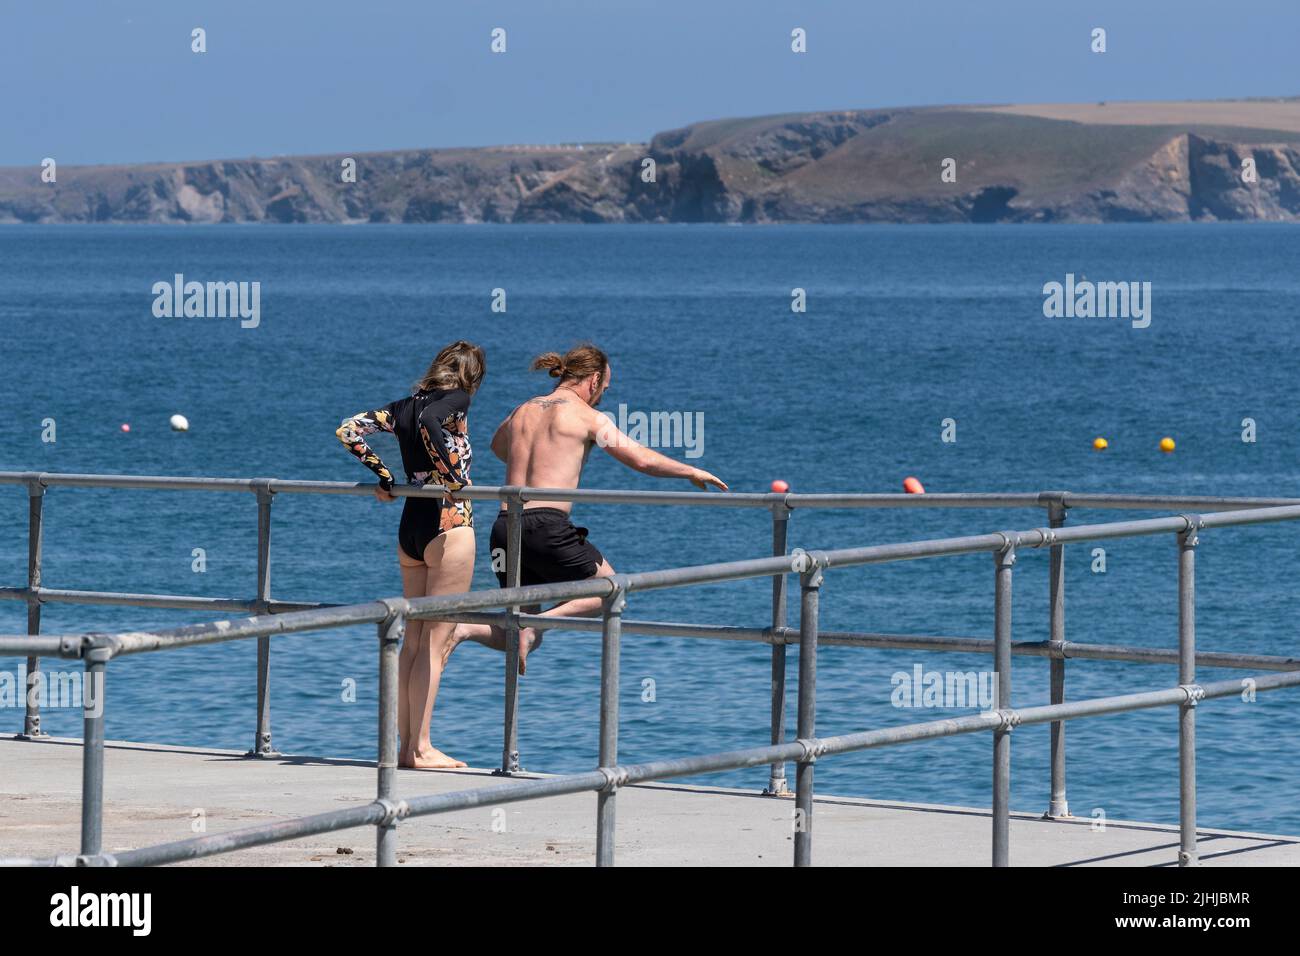 Un holidaymaker sautant d'un quai dans le port de Newquay avec son partenaire à regarder en Cornouailles en Angleterre au Royaume-Uni. Banque D'Images